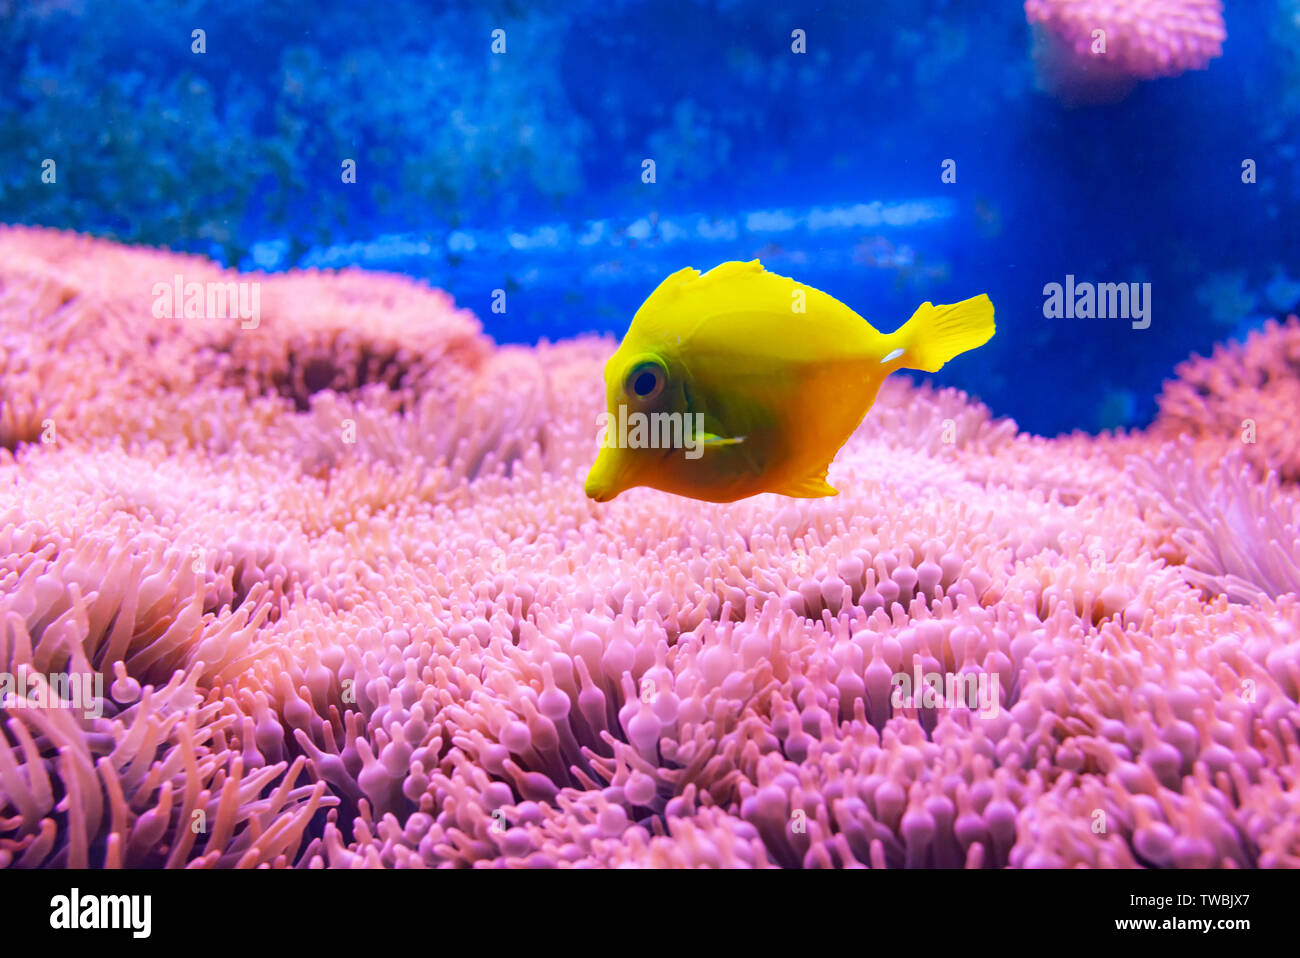 Gelbe tang Fisch, einer der beliebtesten Fische in der Aquakultur, tropische Fische aus Hawaii. Stockfoto